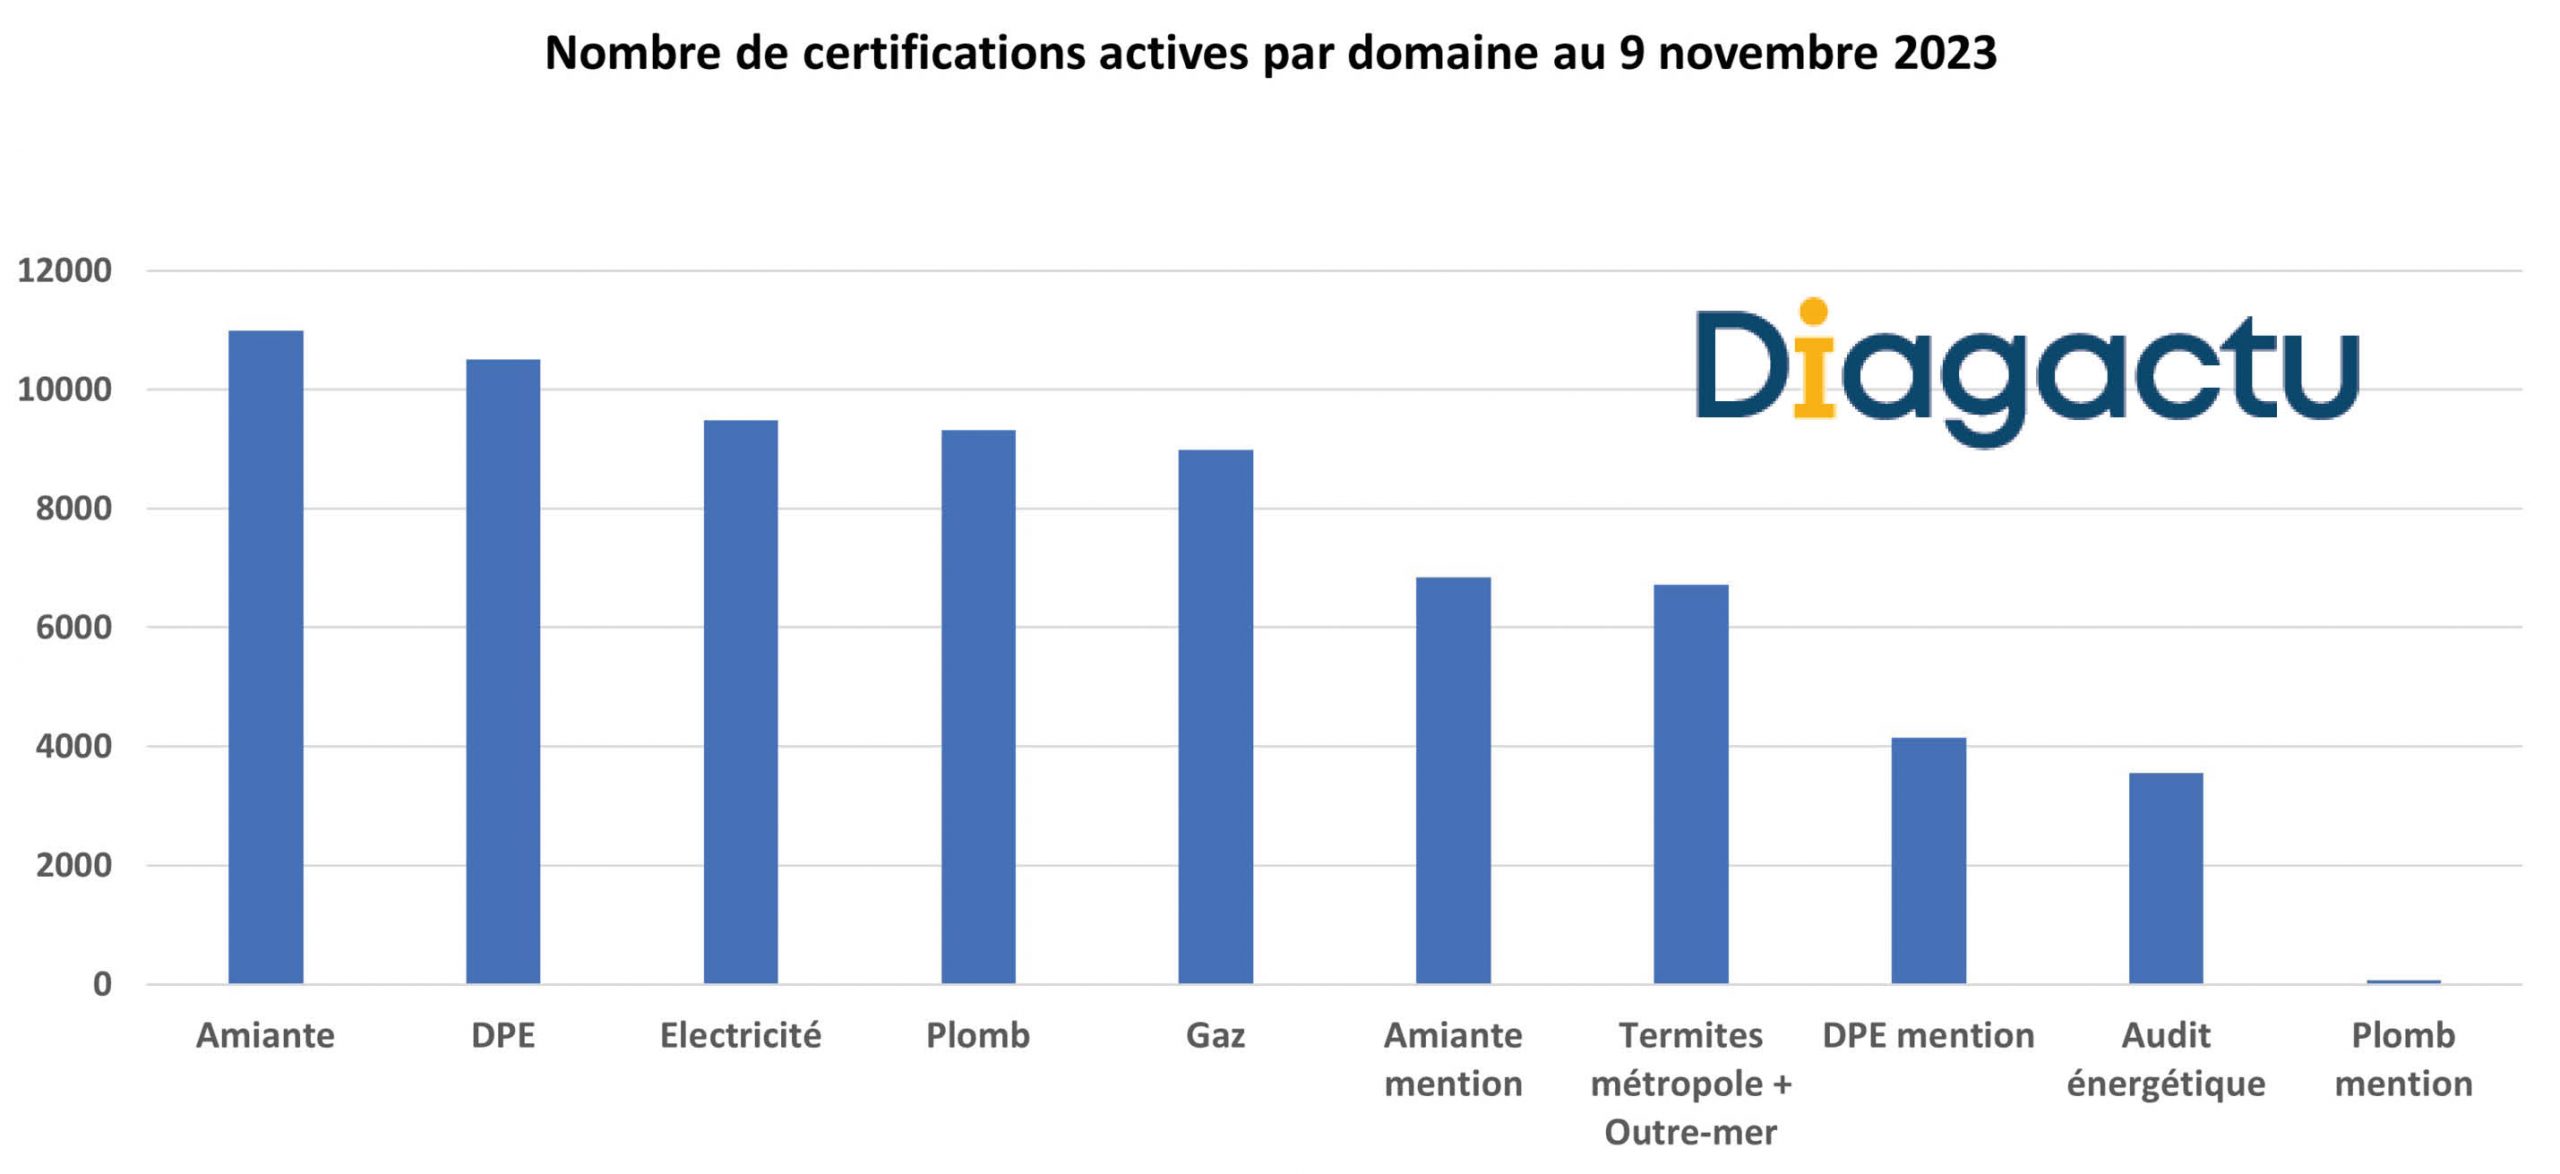 Nombre de certifications actives par domaine au 9 novembre 2023